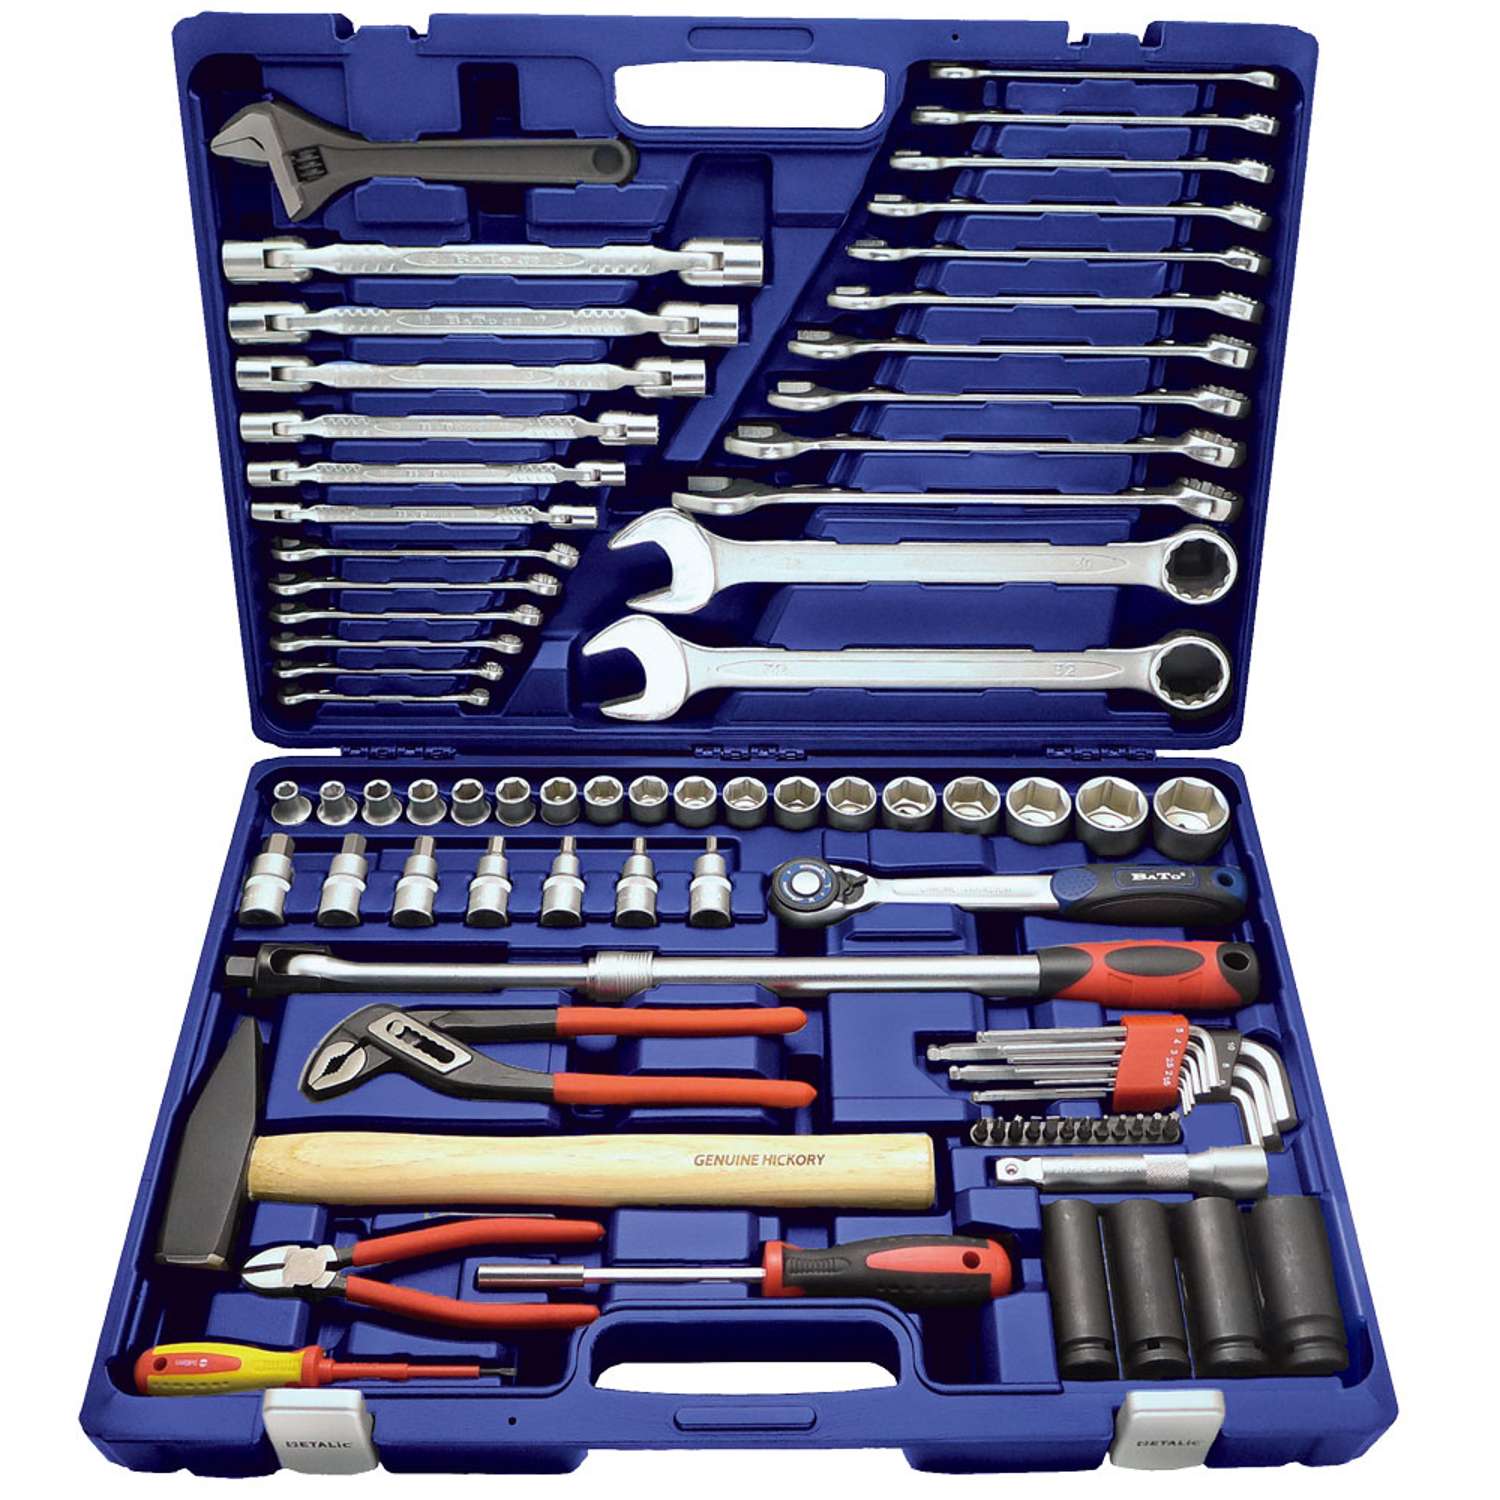 #1 på vores liste over værktøjssæt er Værktøjssæt